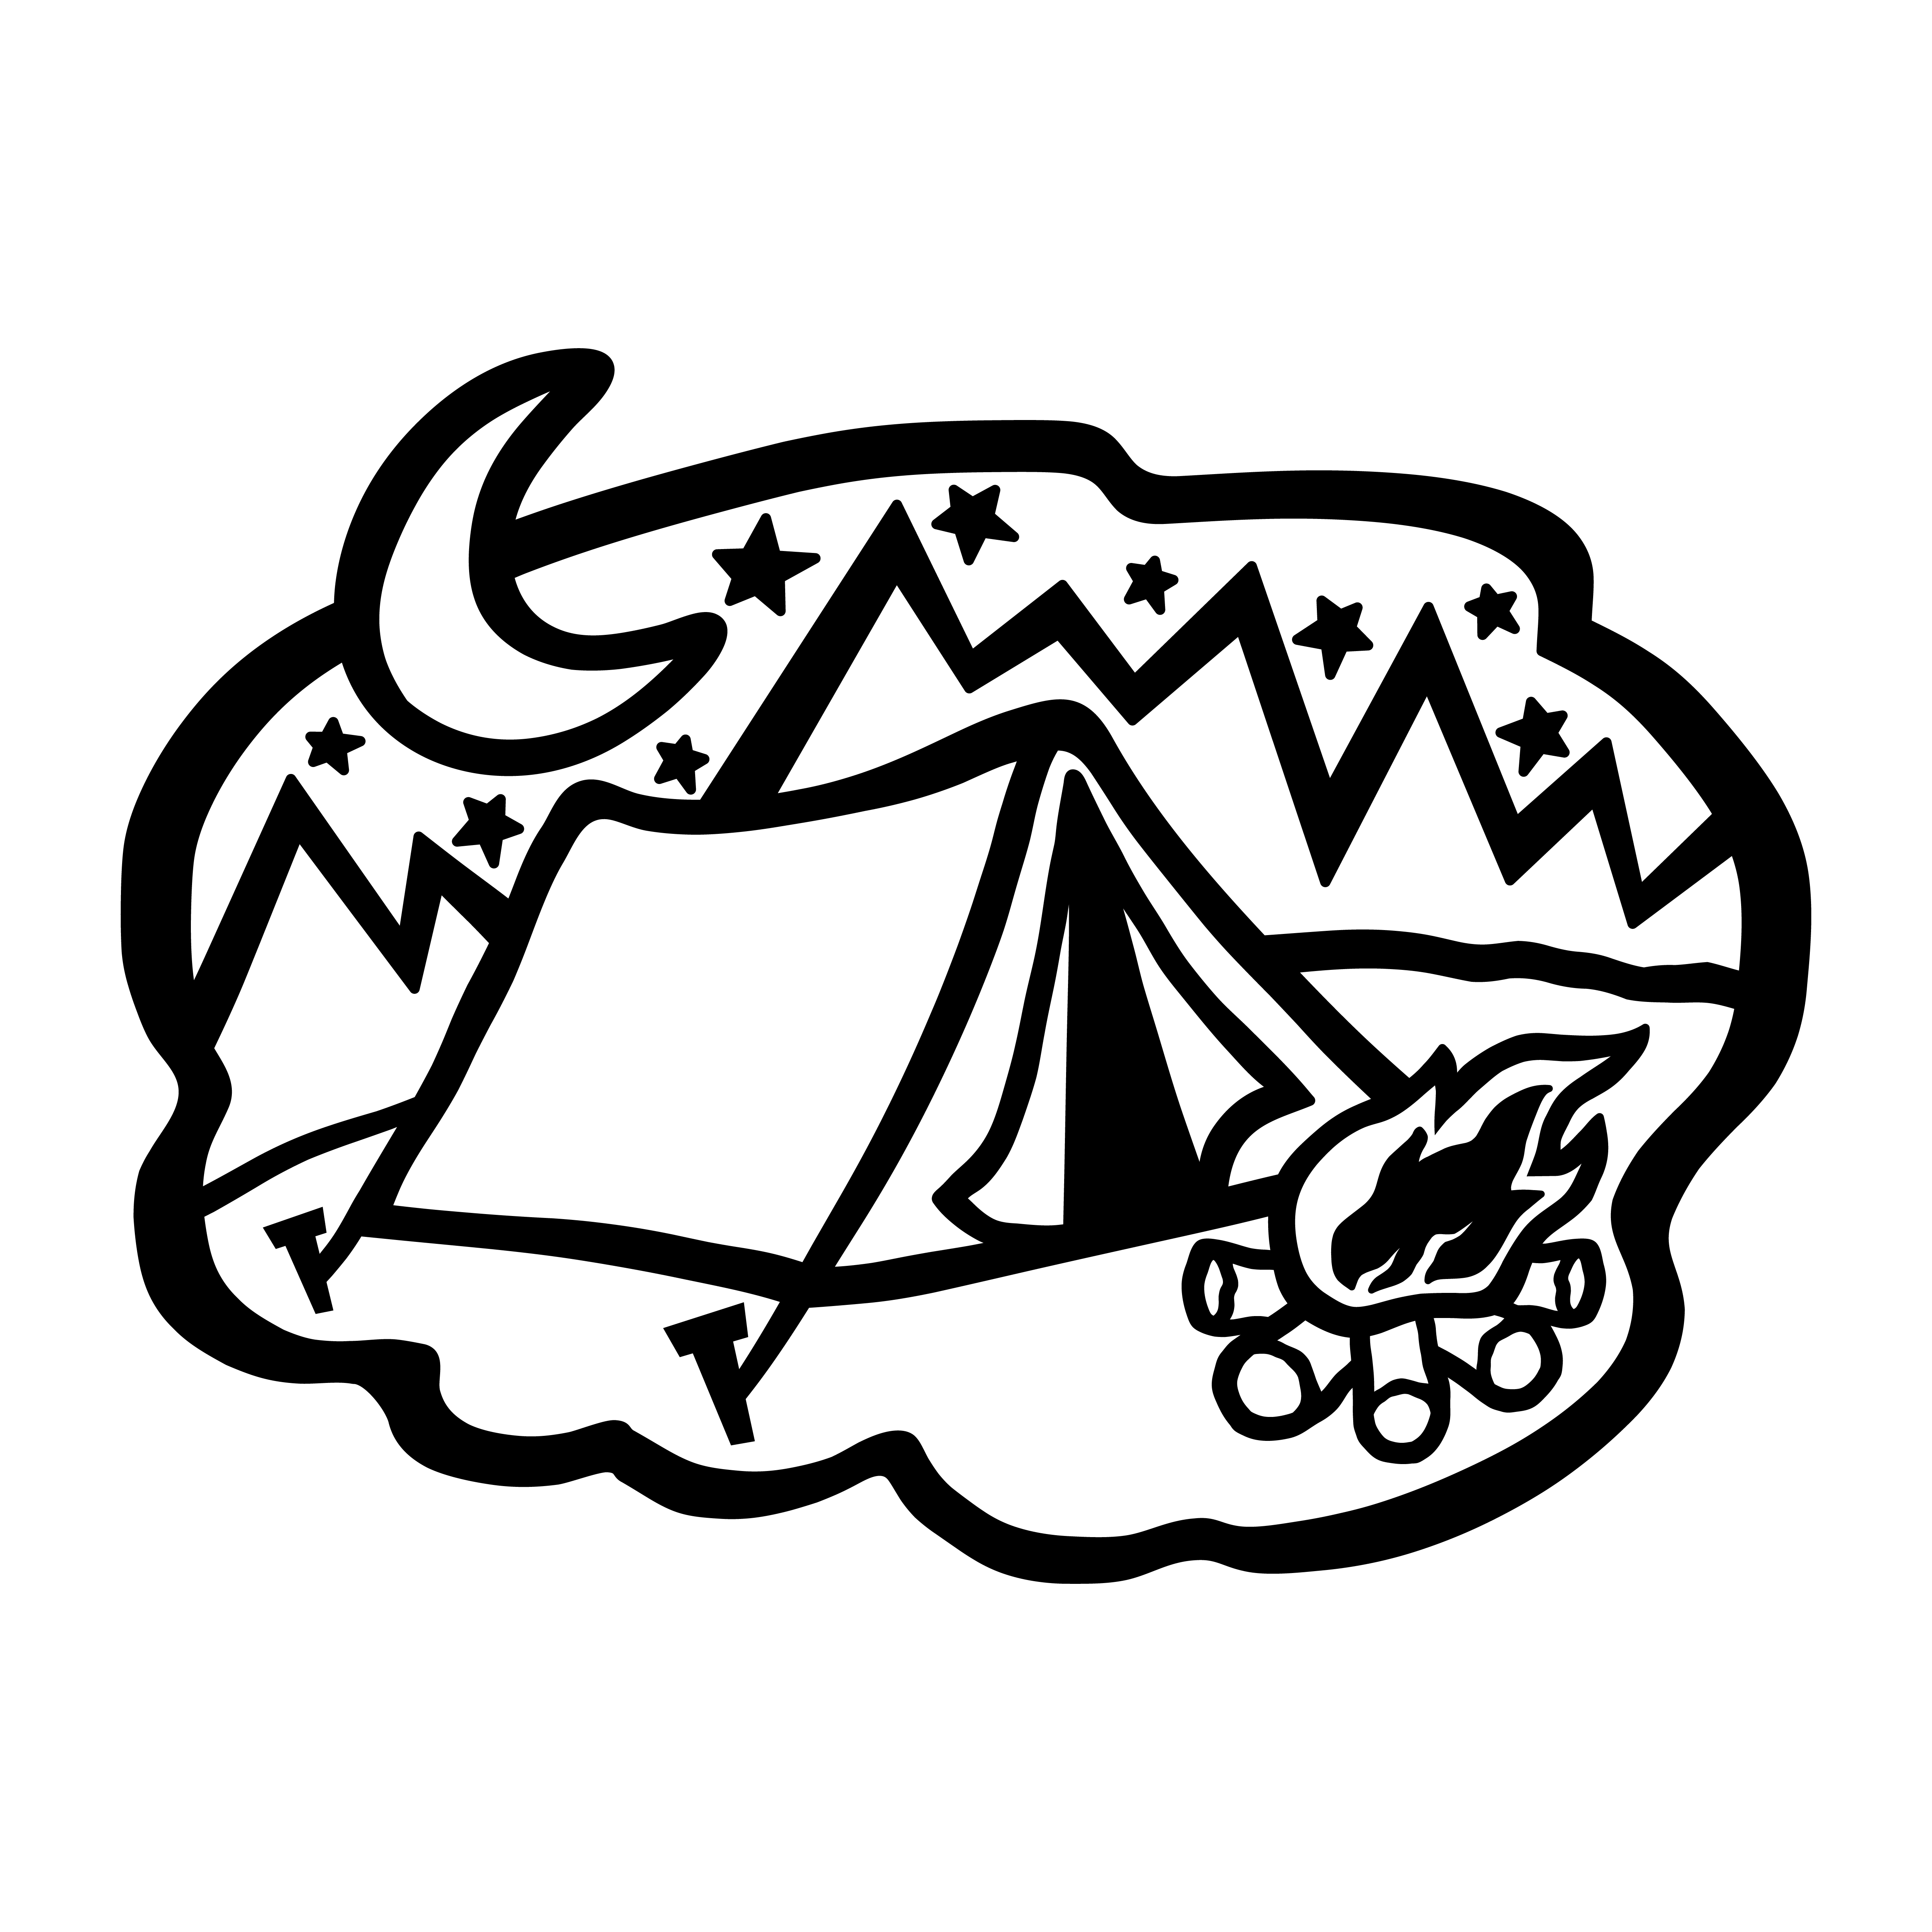 Download Tent Camping - Download Free Vectors, Clipart Graphics ...